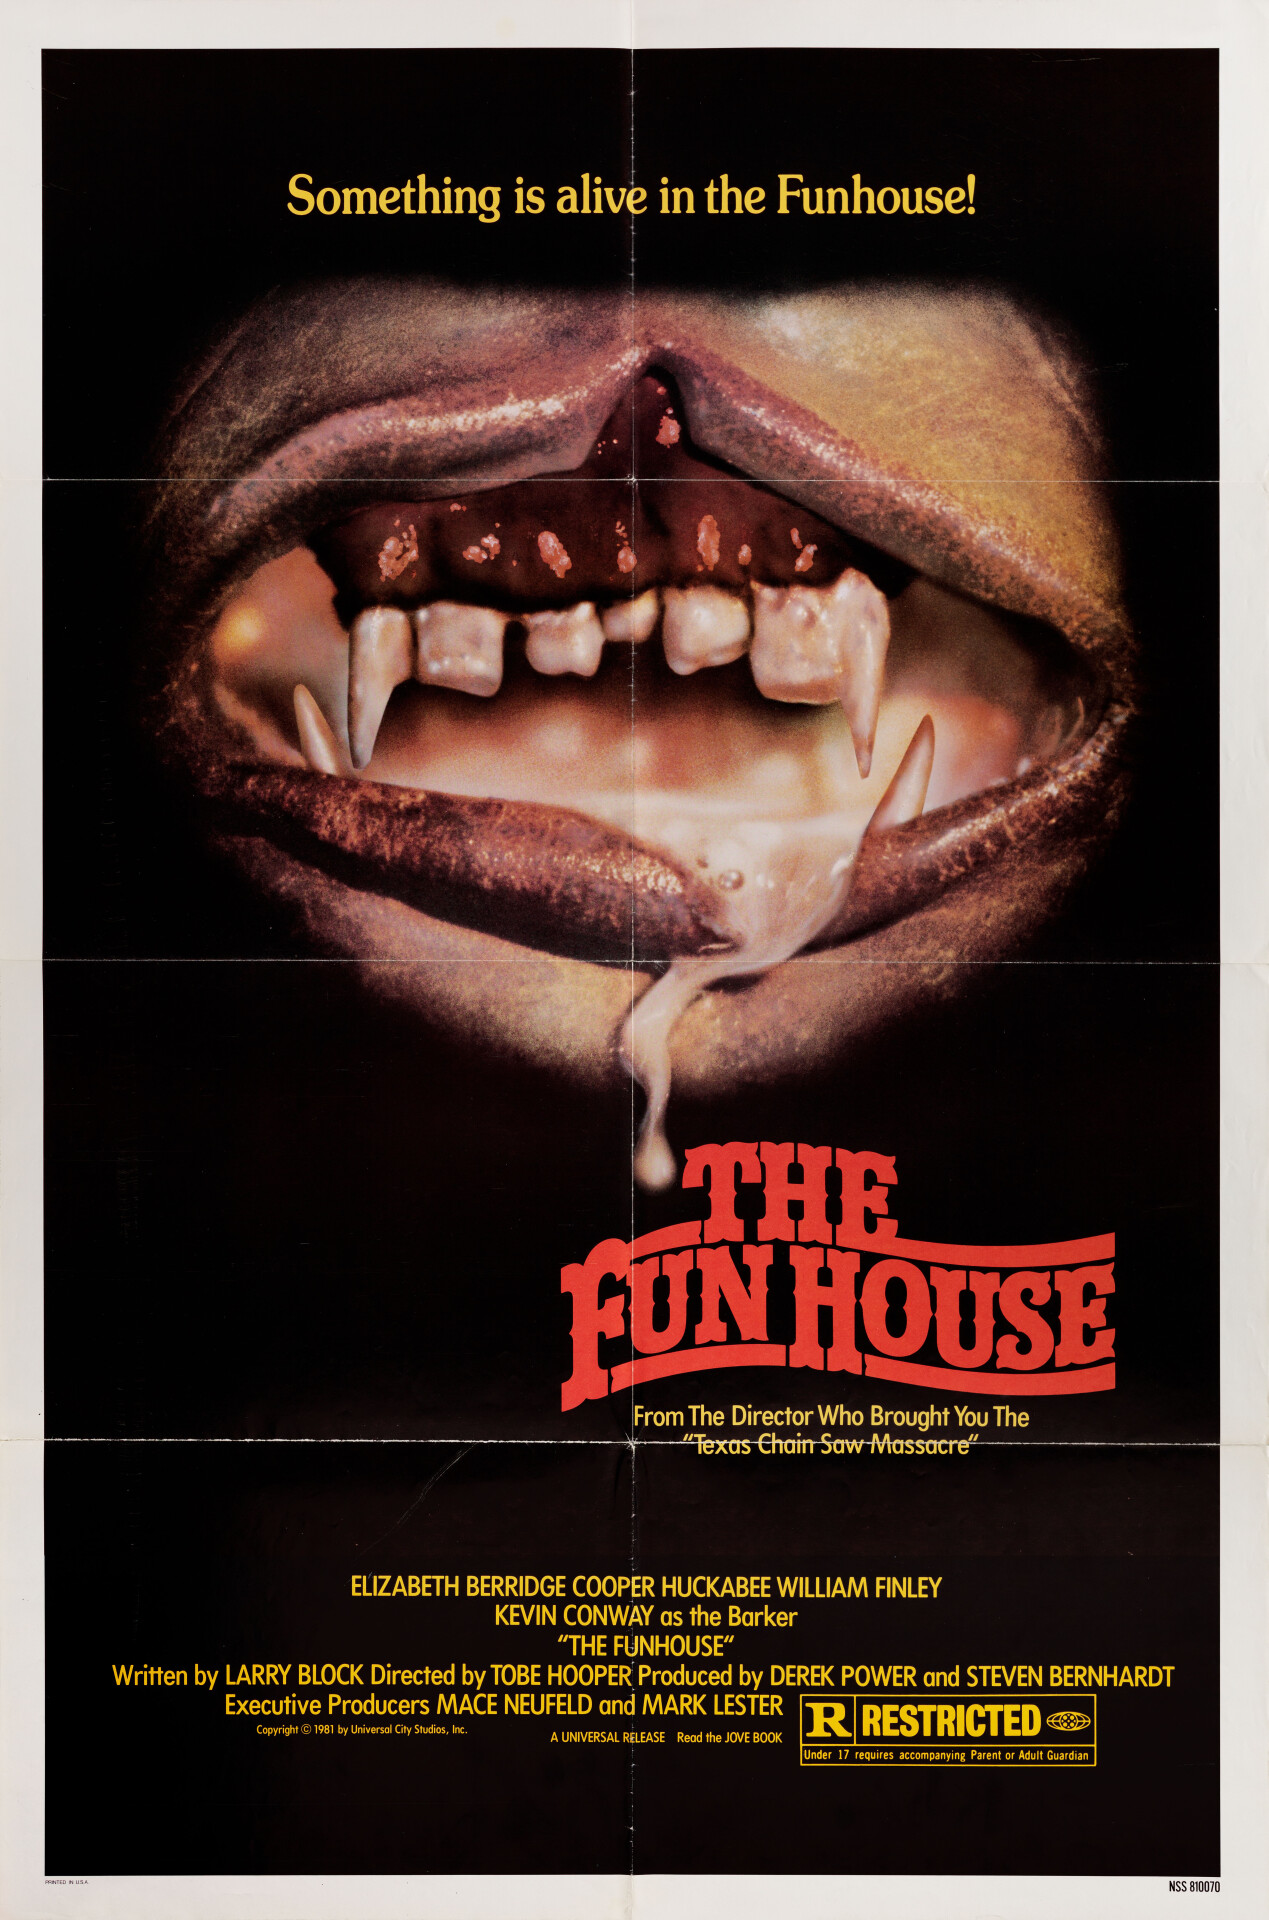 Смертельная забава (The Funhouse, 1981), режиссёр Тобе Хупер, американский постер к фильму (ужасы, 1981 год)